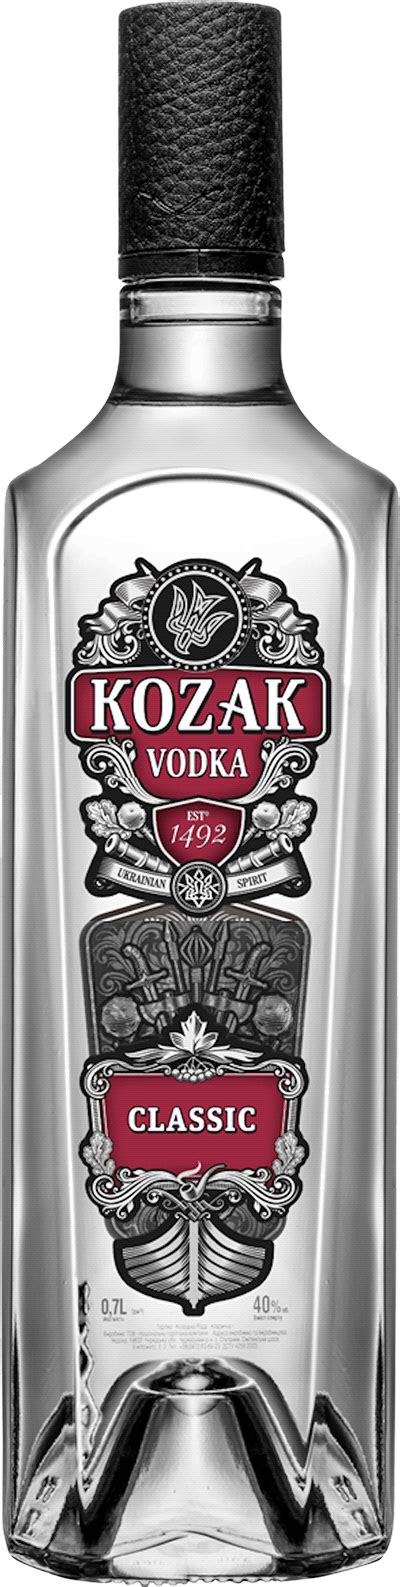 Kozak Classic Vodka Systembolaget